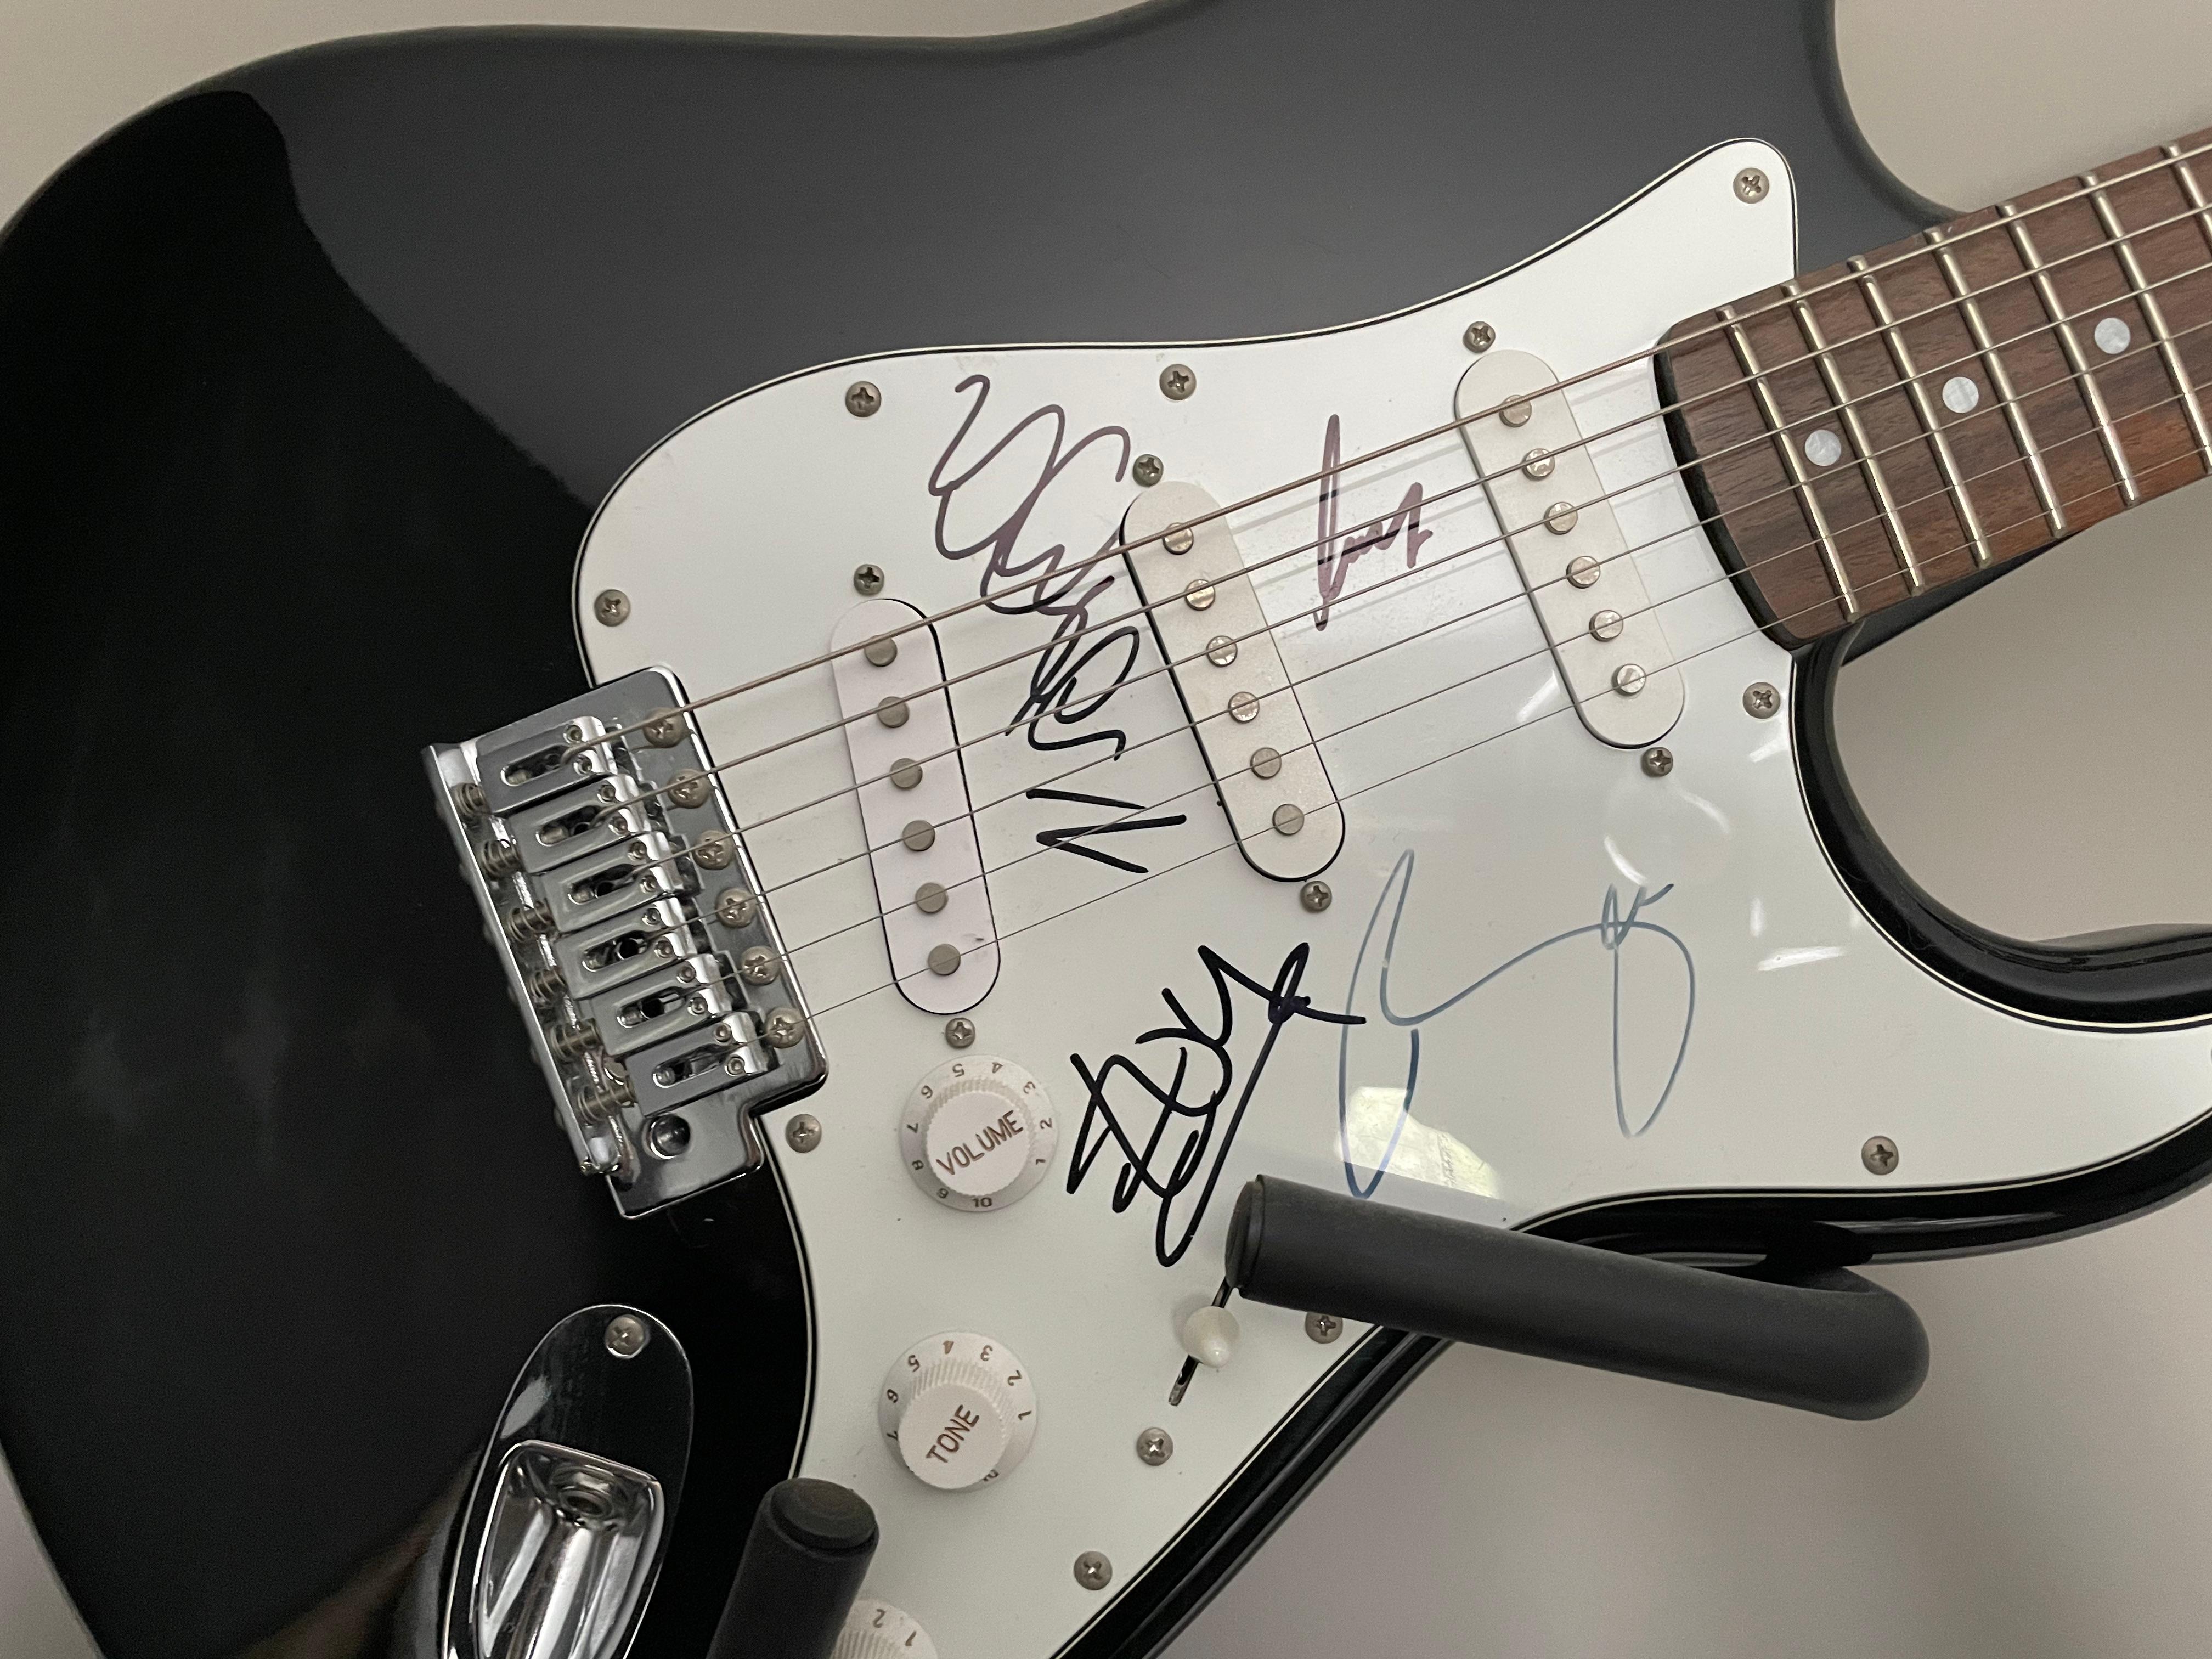 Eine vollständig signierte U2 Cruzer E-Gitarre von Crafter
Eine voll funktionsfähige schwarze elektrische Crafter Cruzer Gitarre.

Signiert von allen 4 Mitgliedern von U2; Bono (1960- ), The Edge (1961- ), Larry Mullen (1961- ) und Adam Clayton